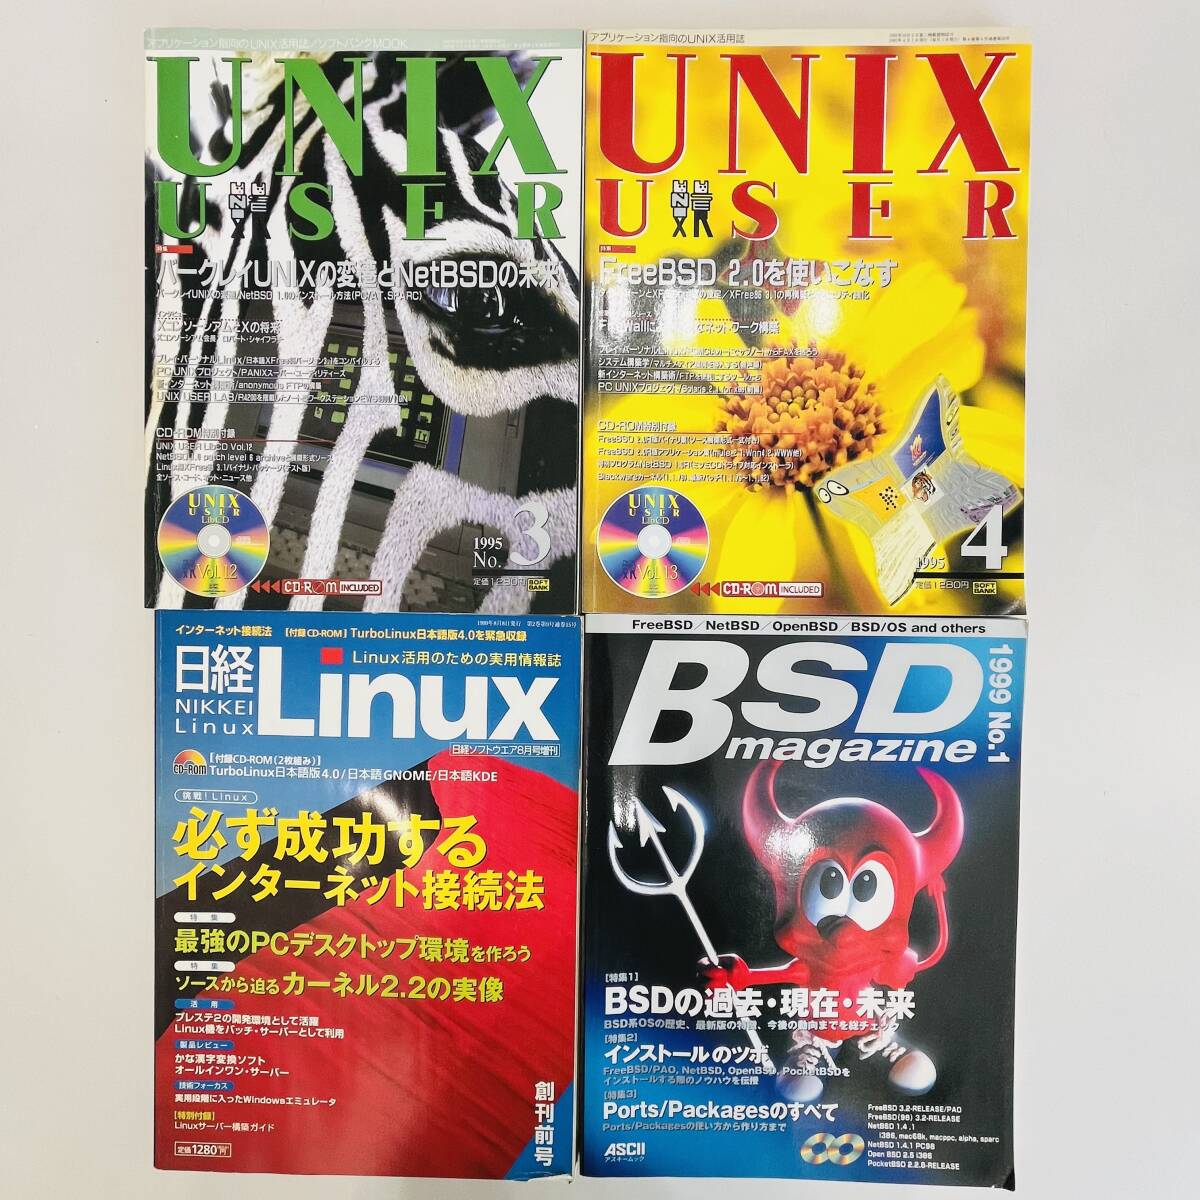 NA6391 персональный компьютер относящийся журнал суммировать дополнение диск имеется LibCD UNIX USER Nikkei Linux BSD журнал персональный компьютер относящийся книга@ осмотр K